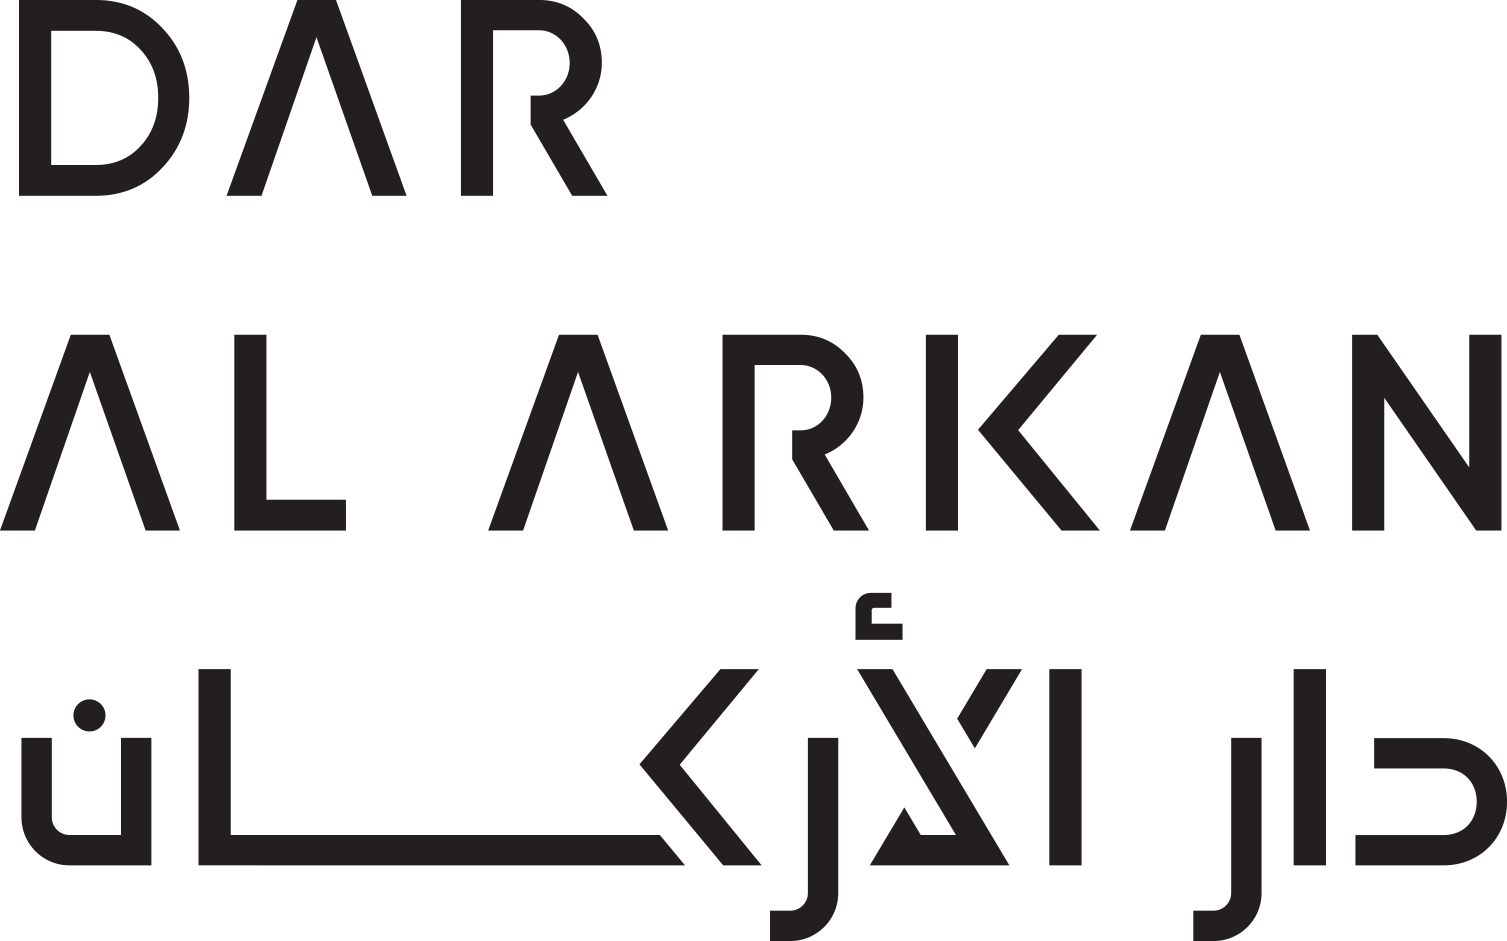 Dar Al Arkan